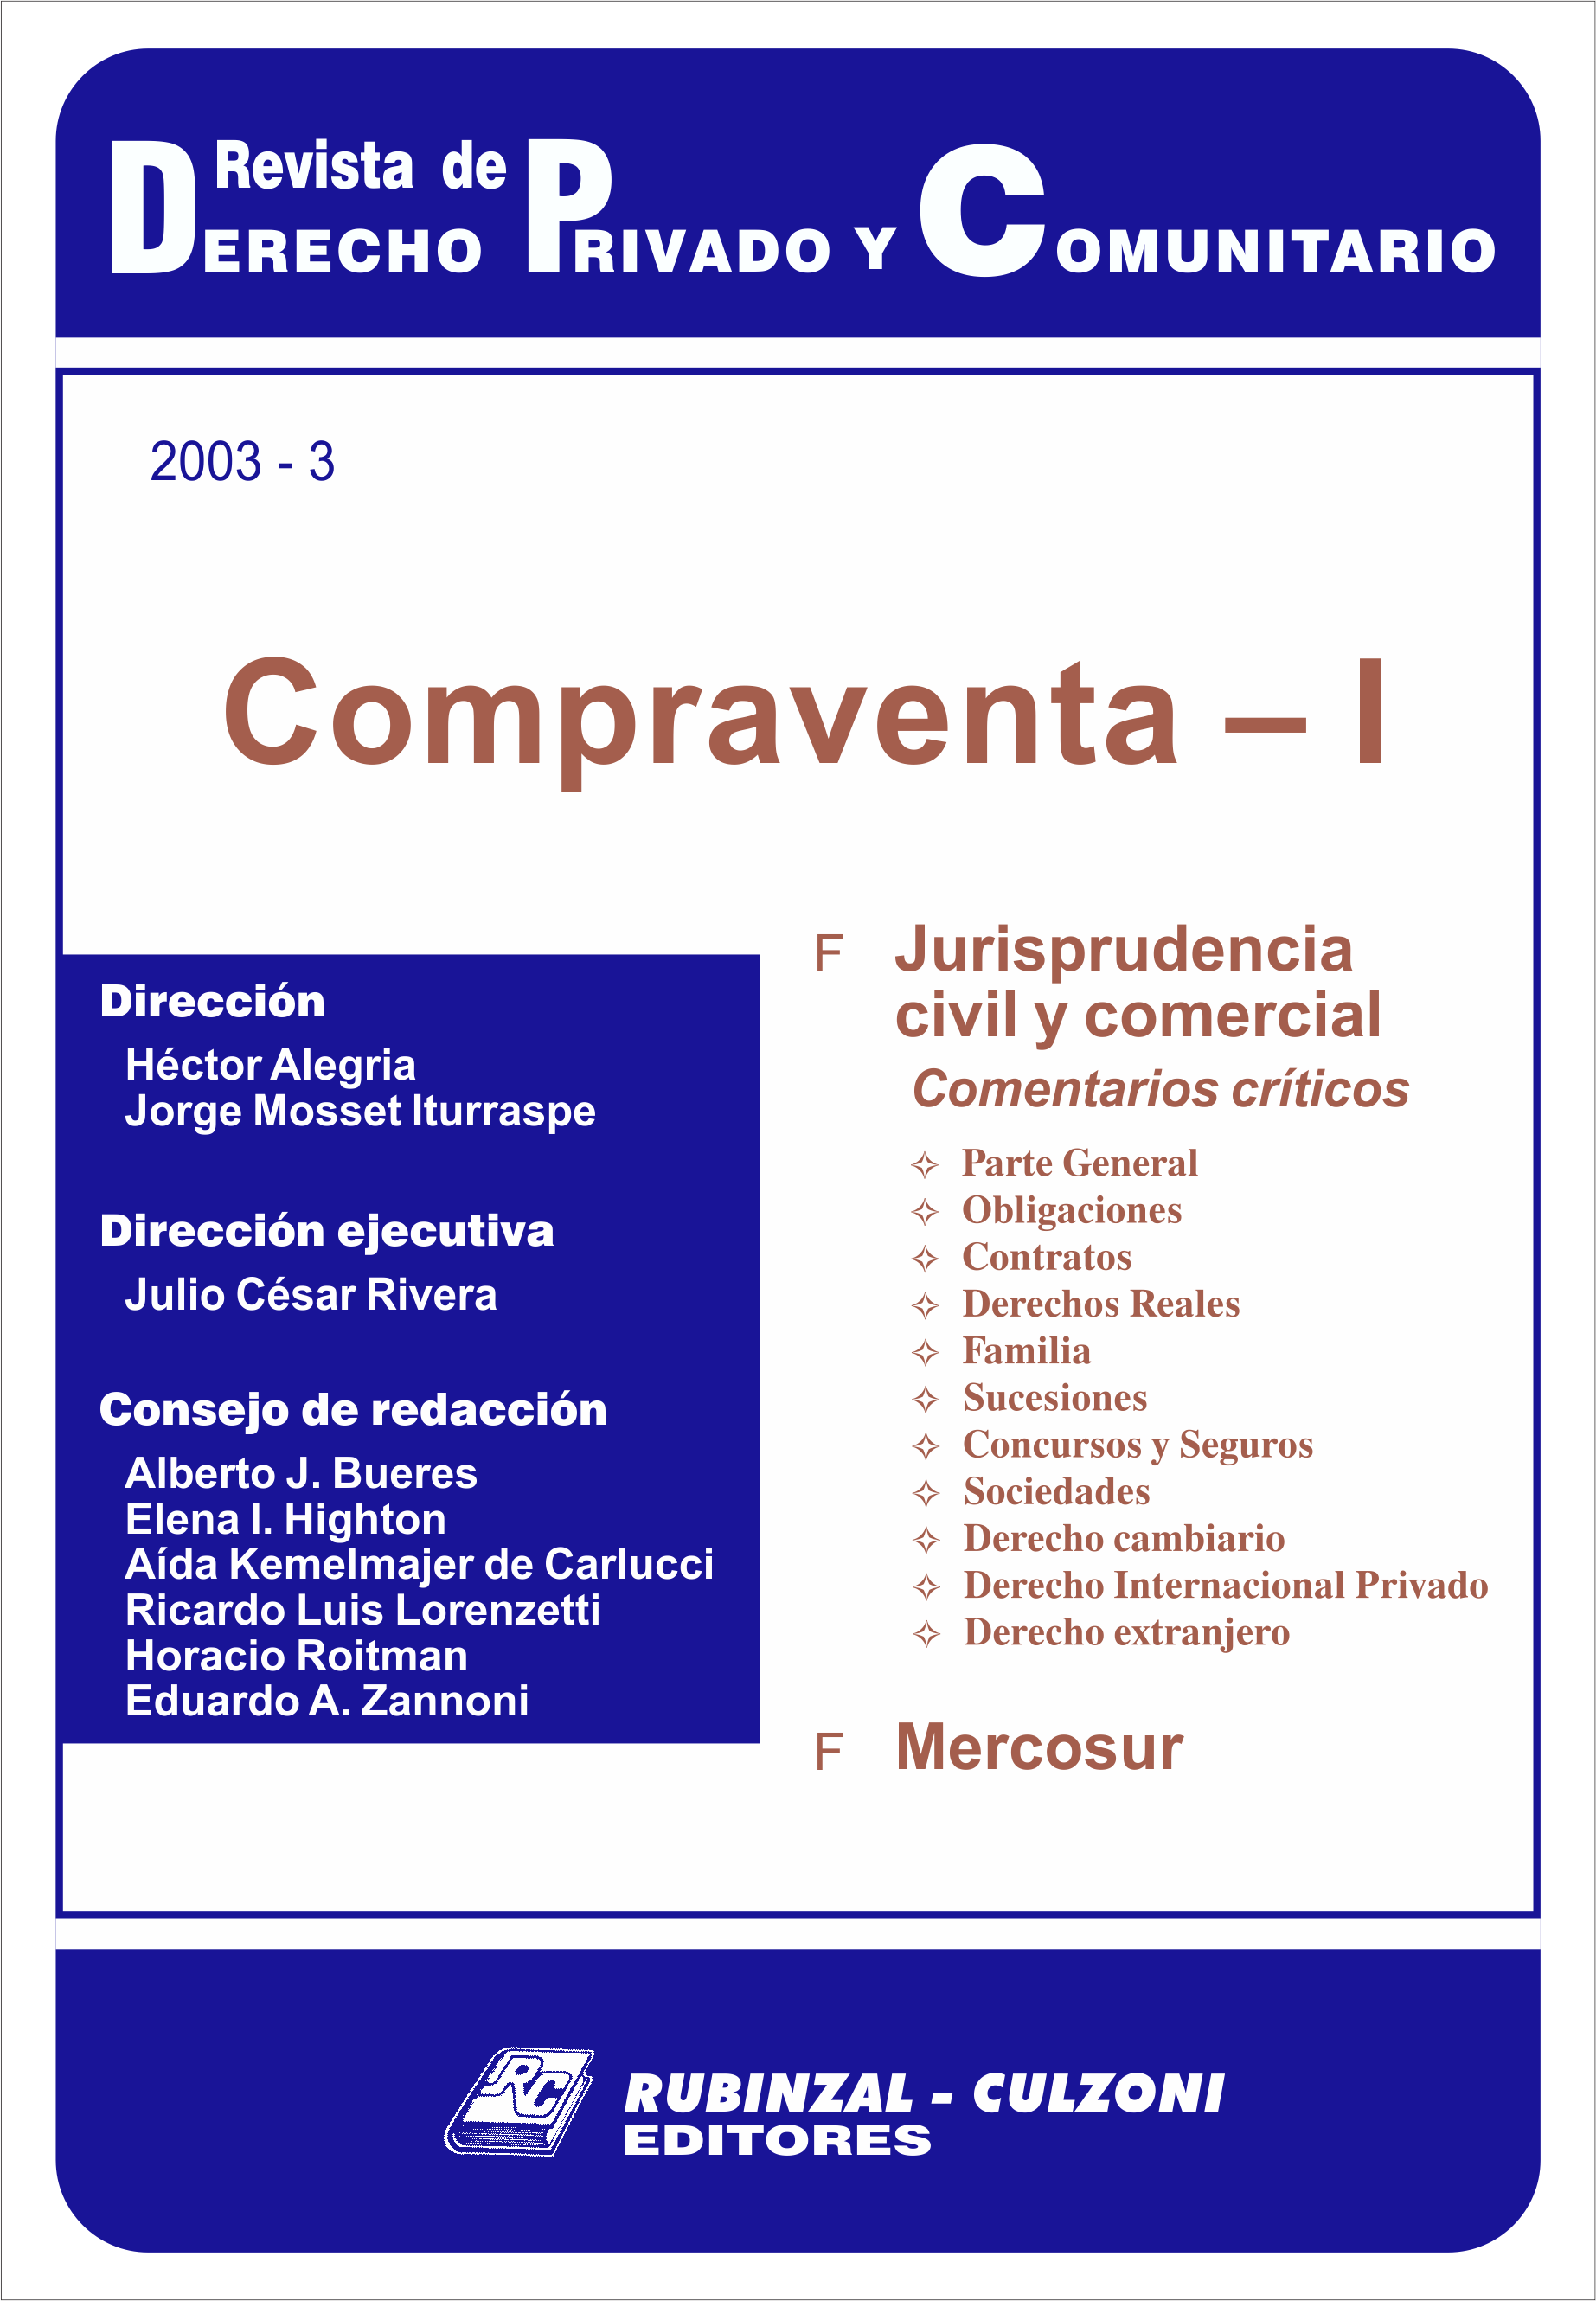 Revista de Derecho Privado y Comunitario - Compraventa - I.